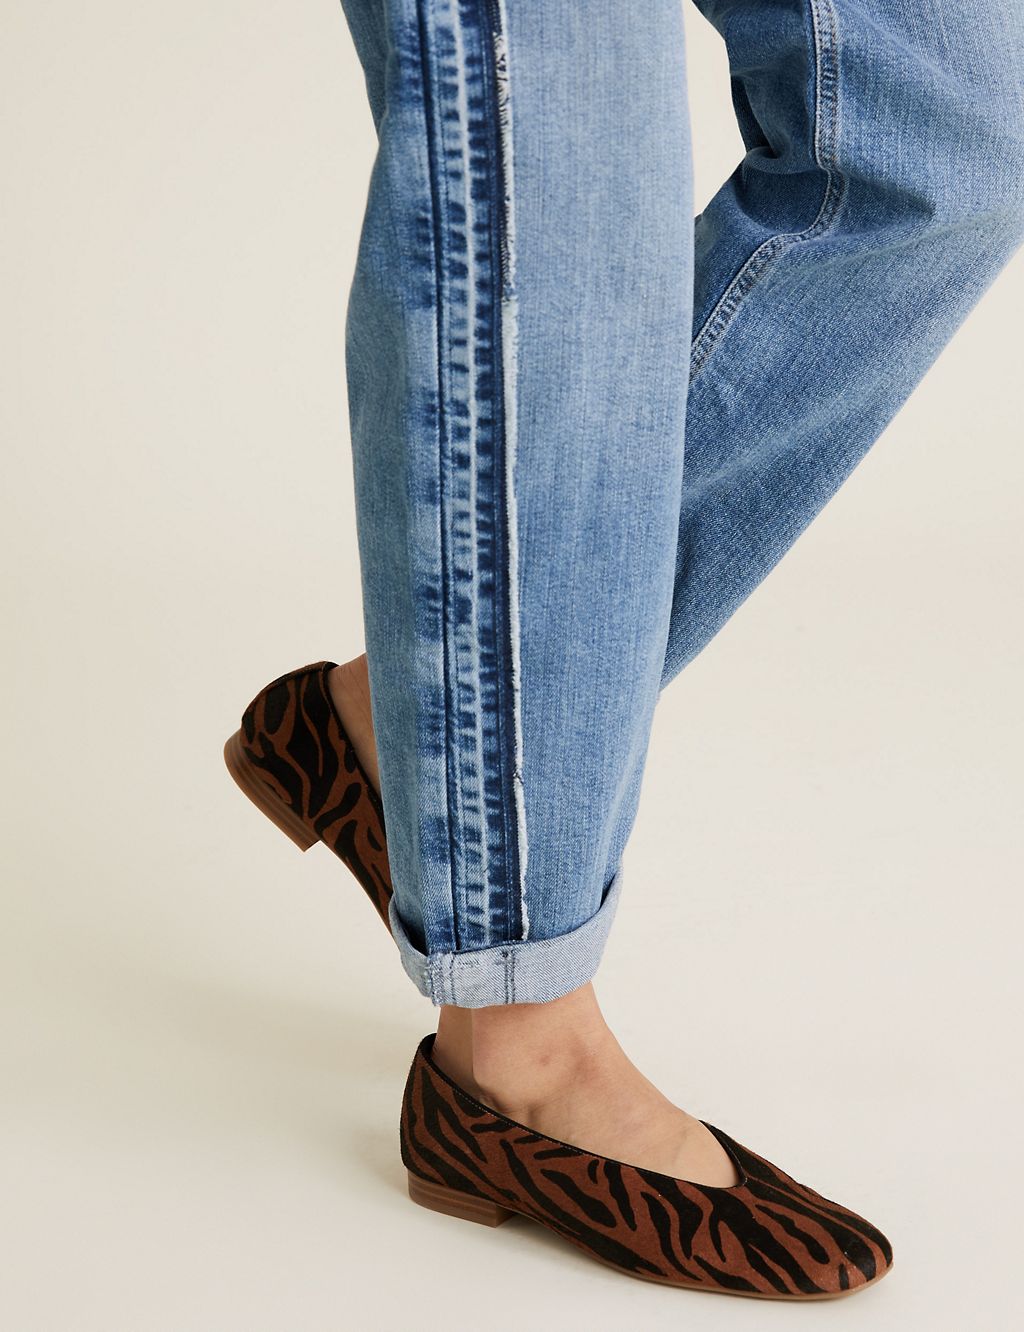 Boyfriend Side Detail Jeans 4 of 7